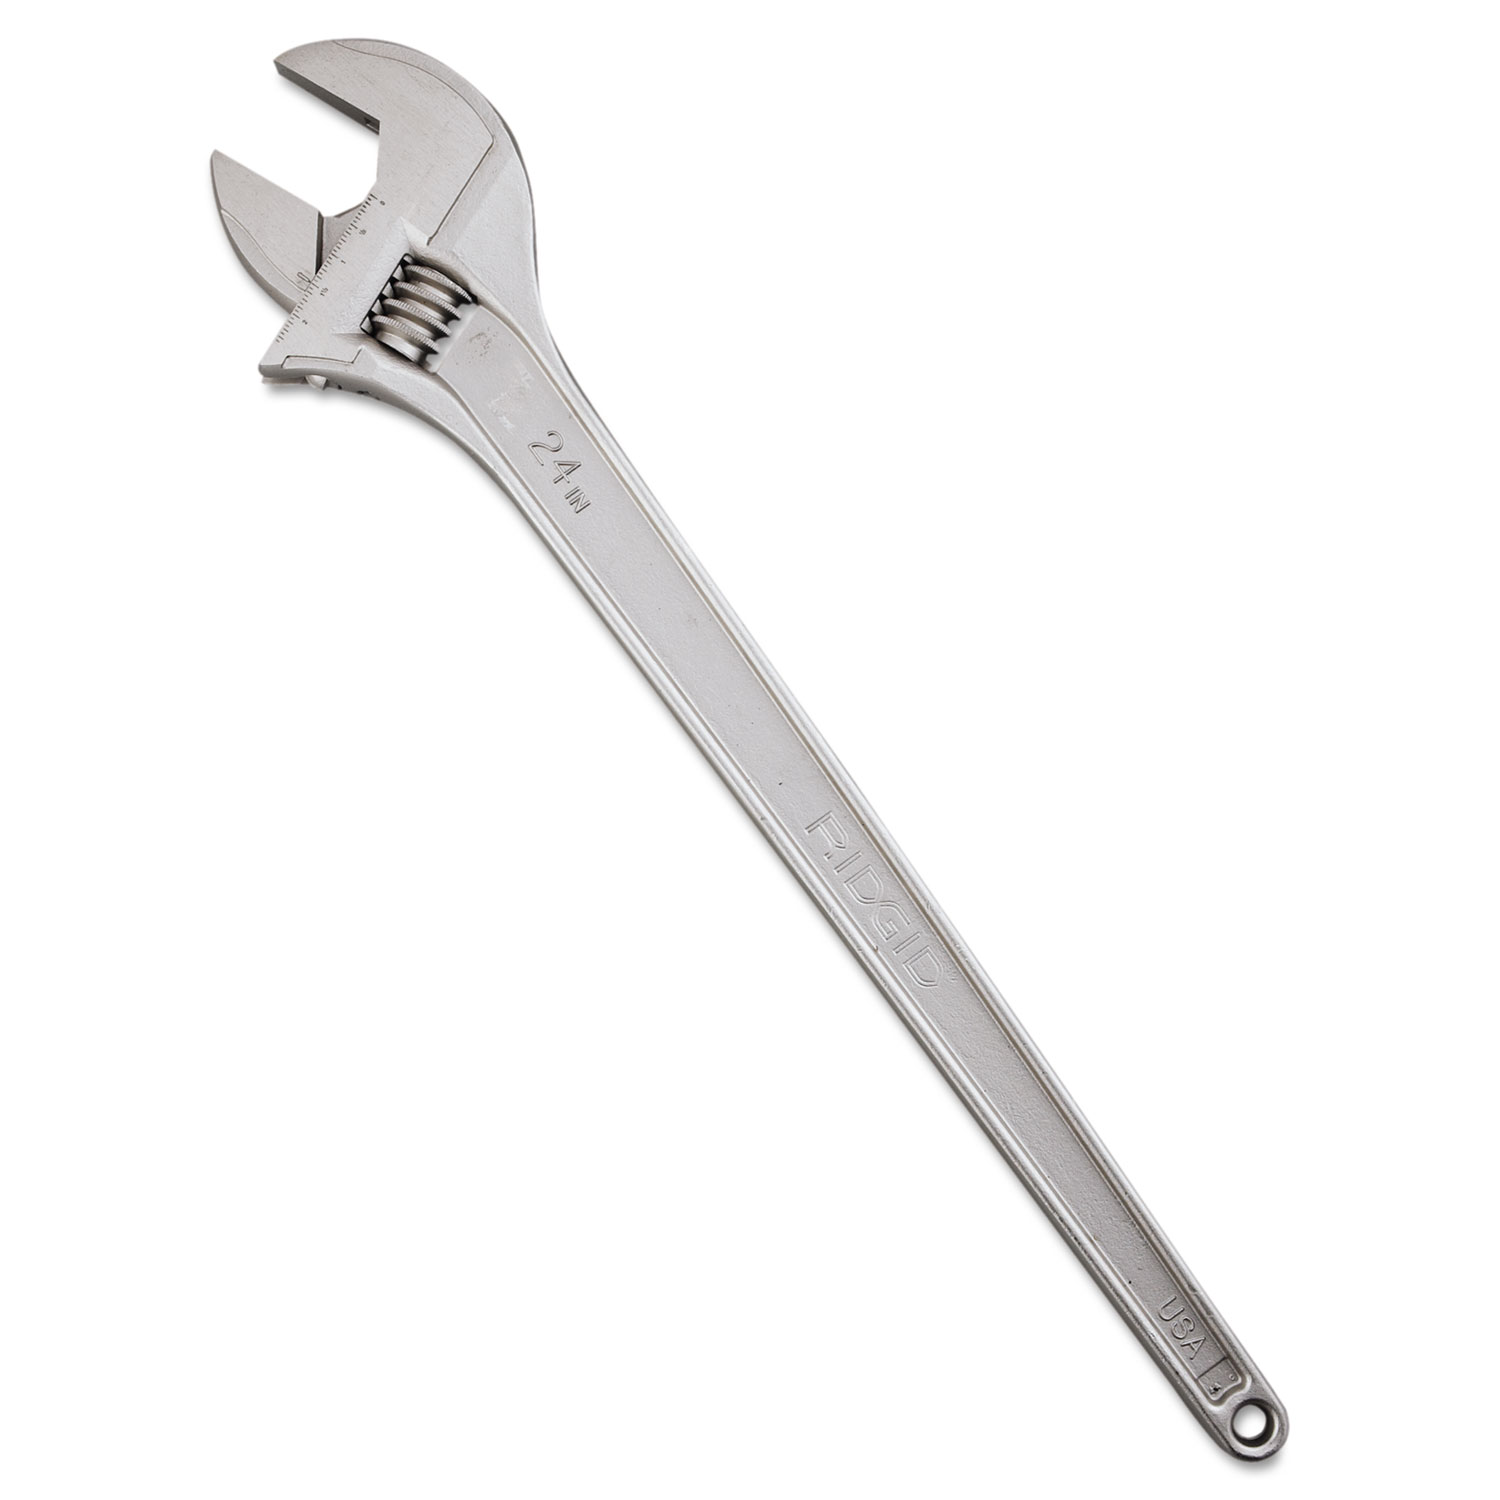 RIDGID Adjustable Wrench, 24 Long, 1 1/8 Jaw Capacity, Chrome Finish